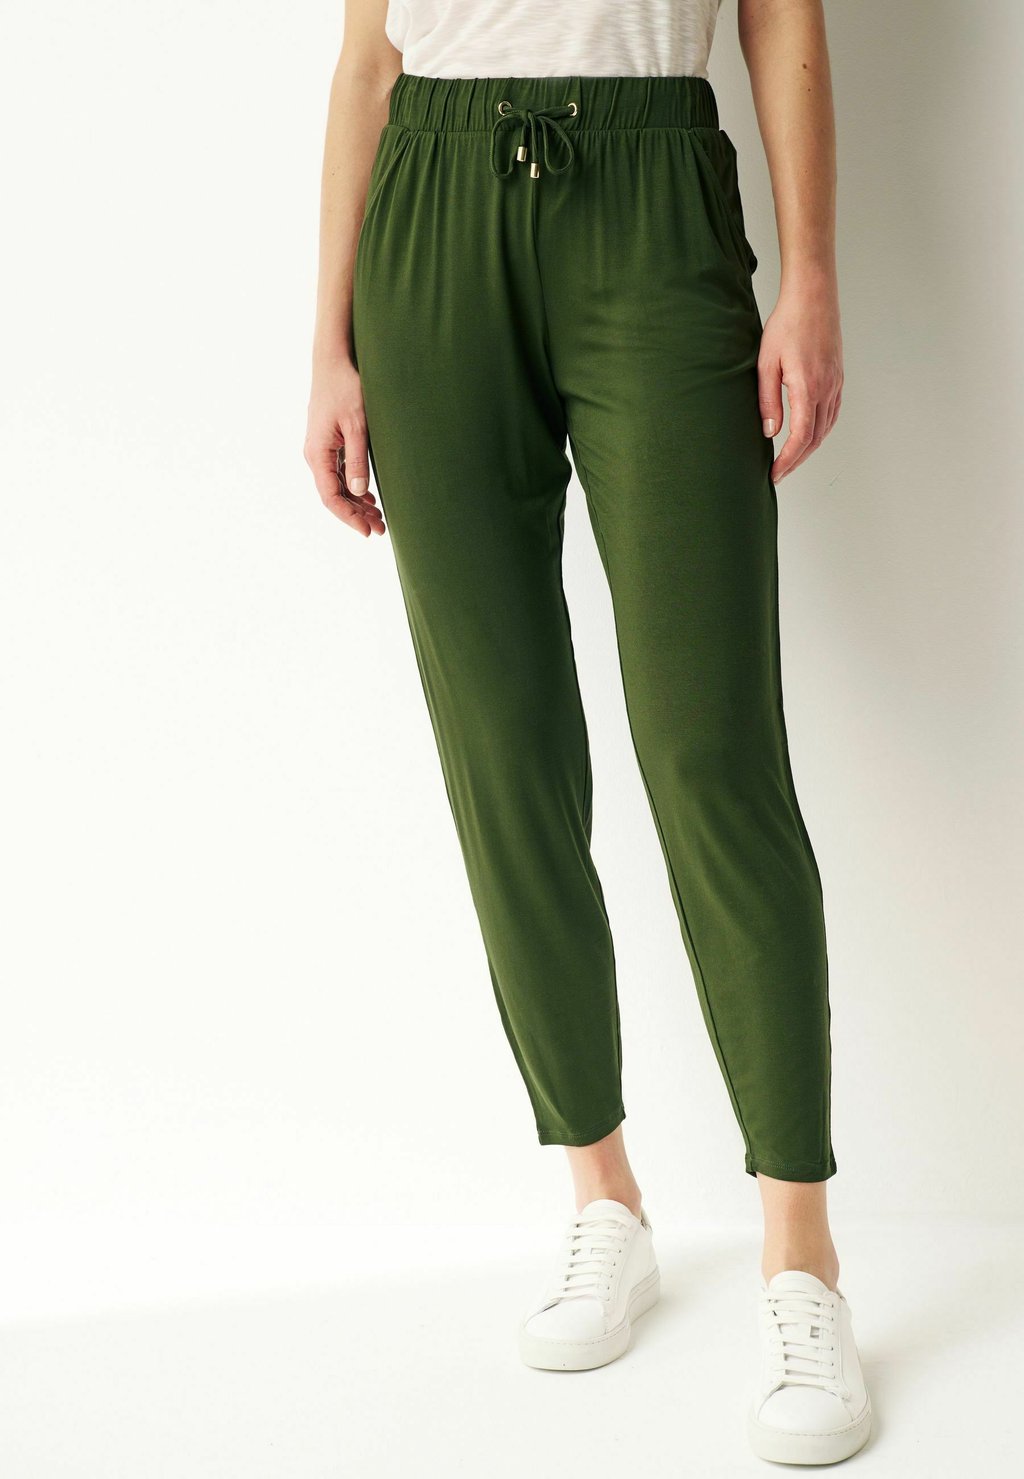 спортивные брюки next цвет khaki green camo Спортивные брюки Joggers Next, цвет dark khaki green